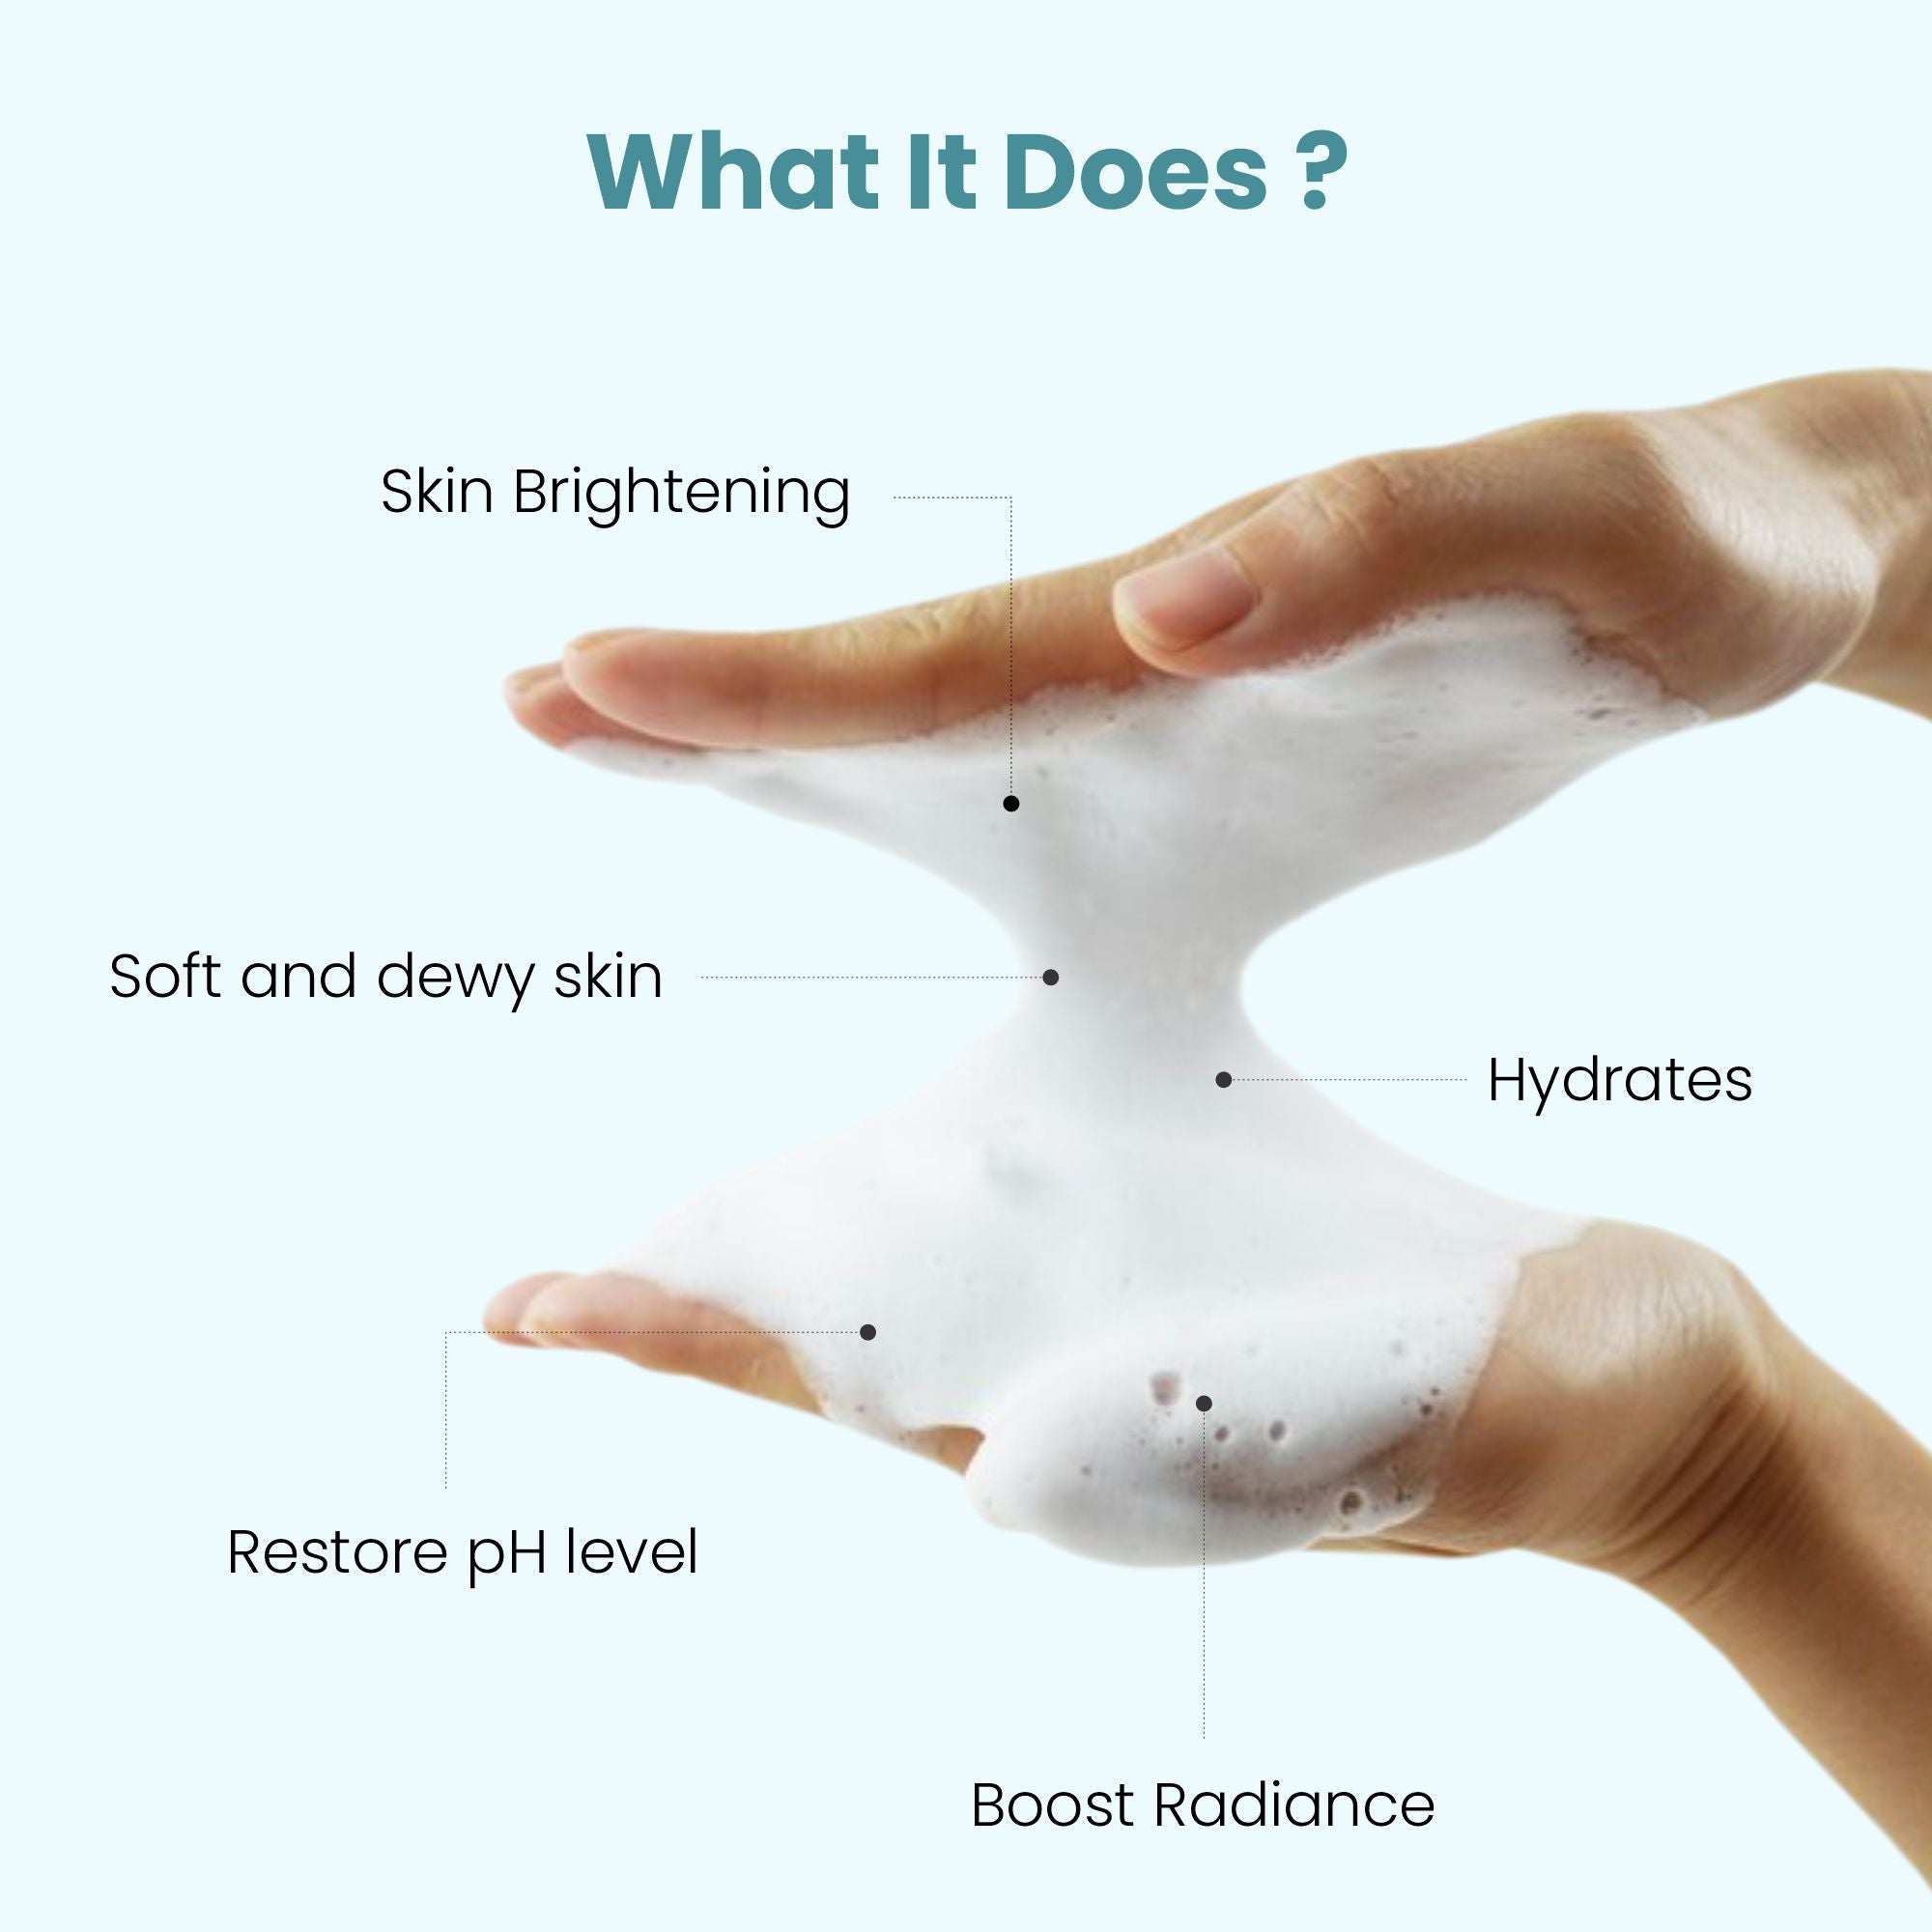 Uniqaya Vitamin C Foaming Face Wash For Skin Brightening